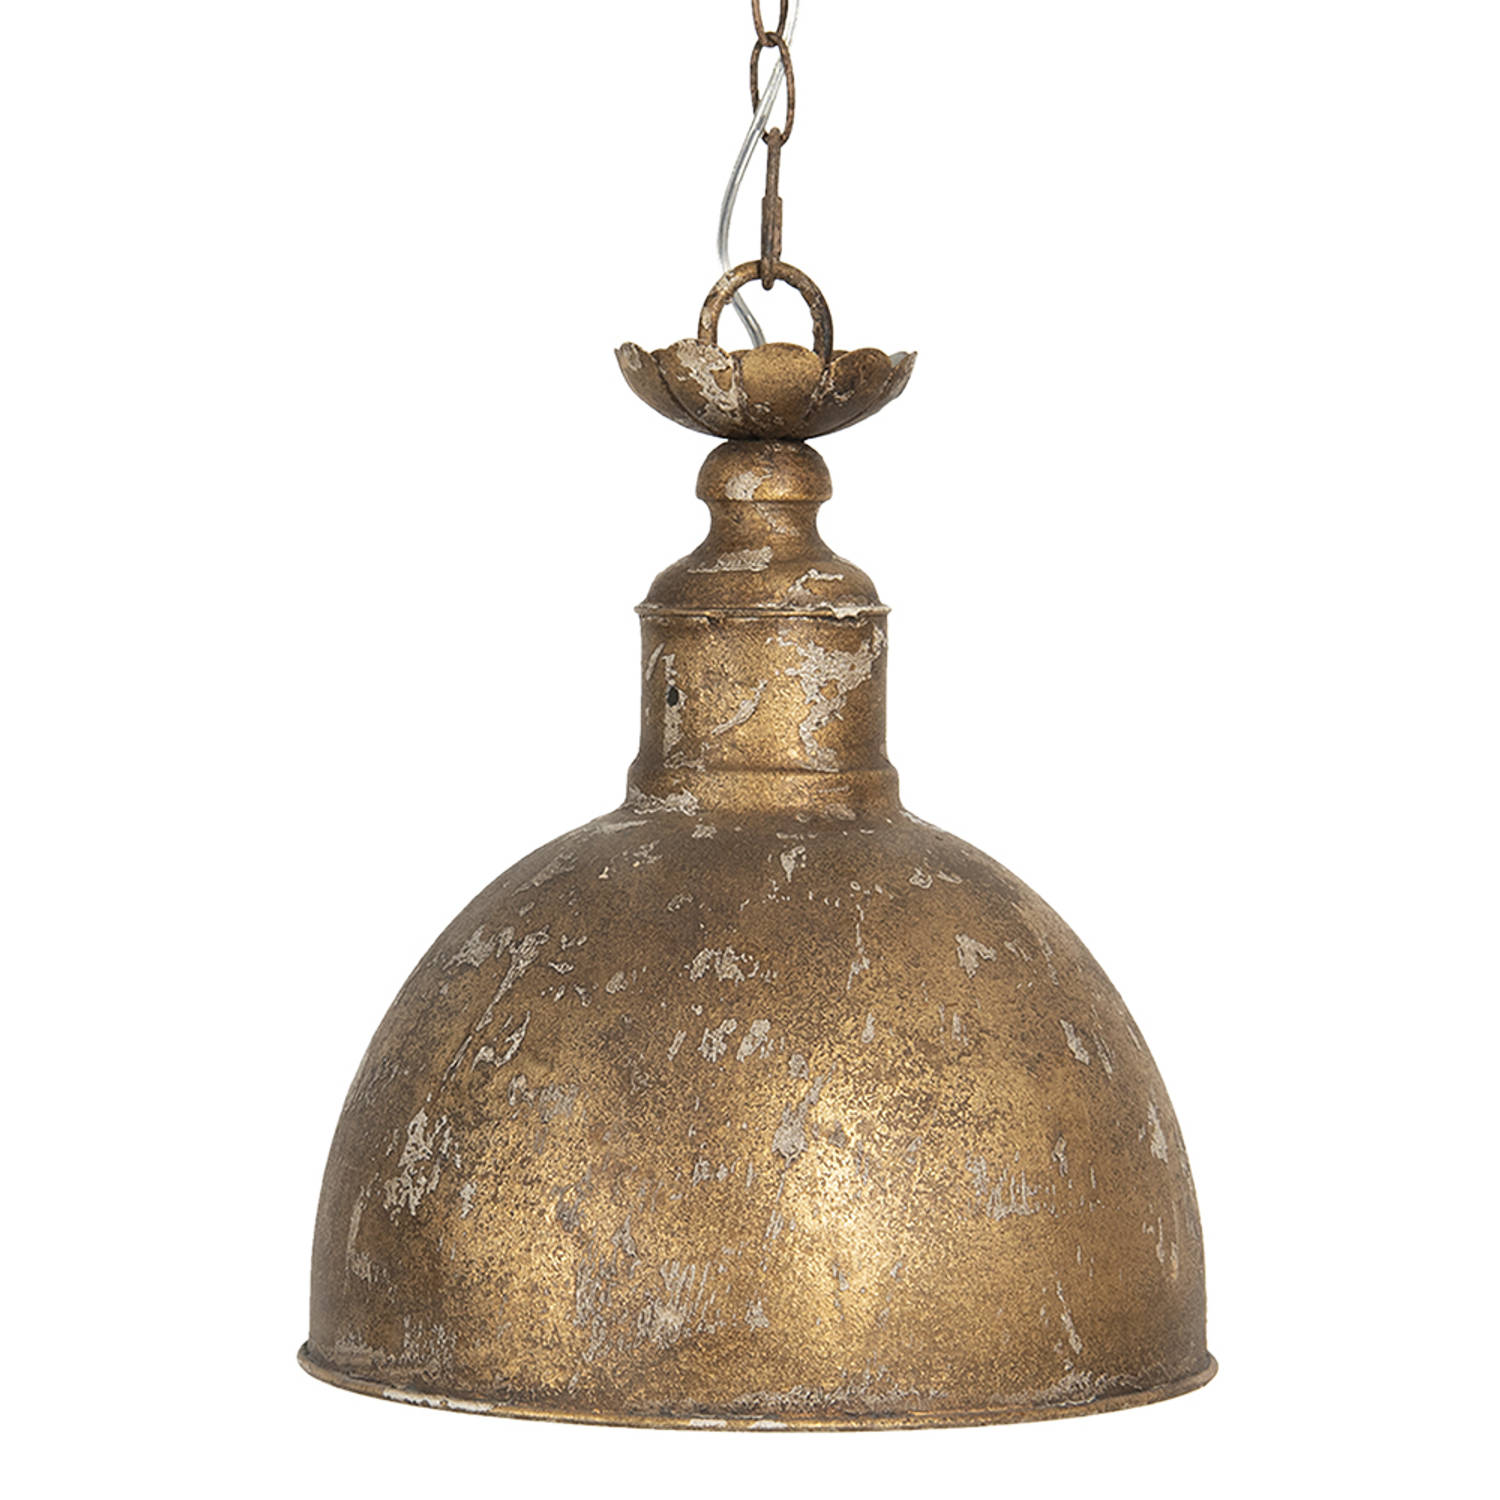 Haes Deco Hanglamp Industrial Koperkleurige Vintage Lamp, Ø 29*35 Cm Ronde Hanglamp Eettafel, Hangla